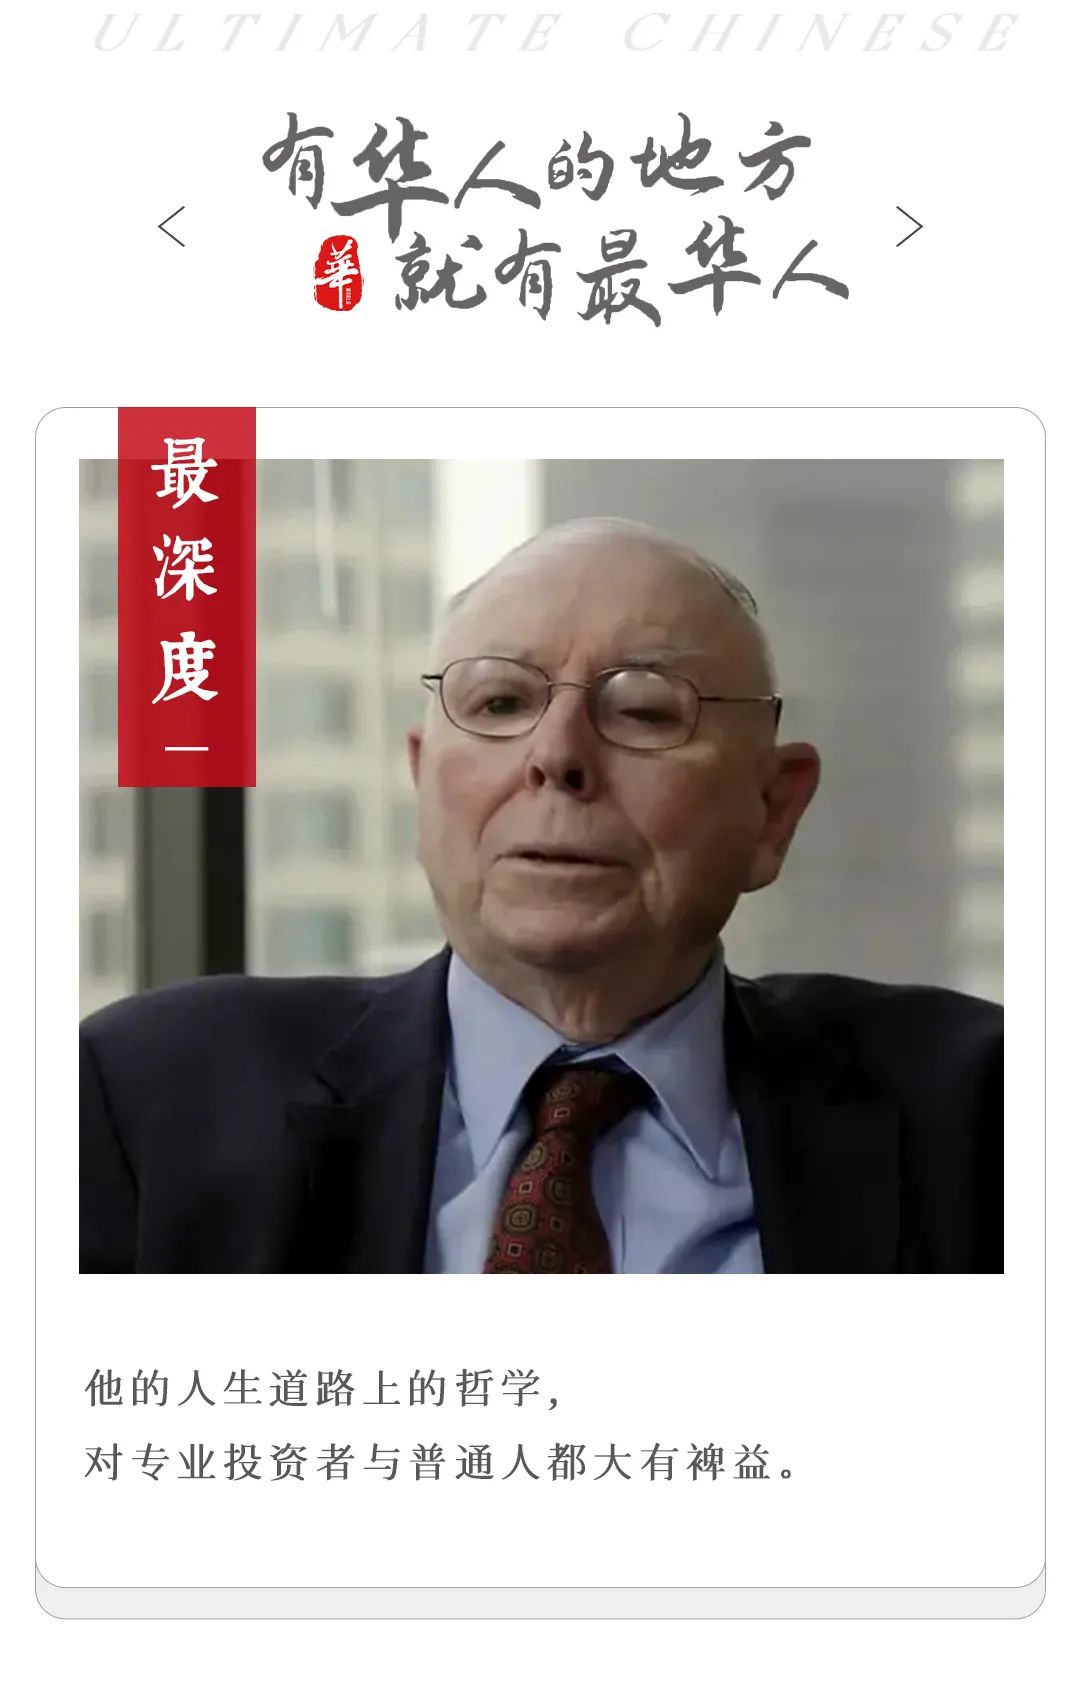 Charlie Munger, investing sage and Warren Buffett's confidant, dies ...